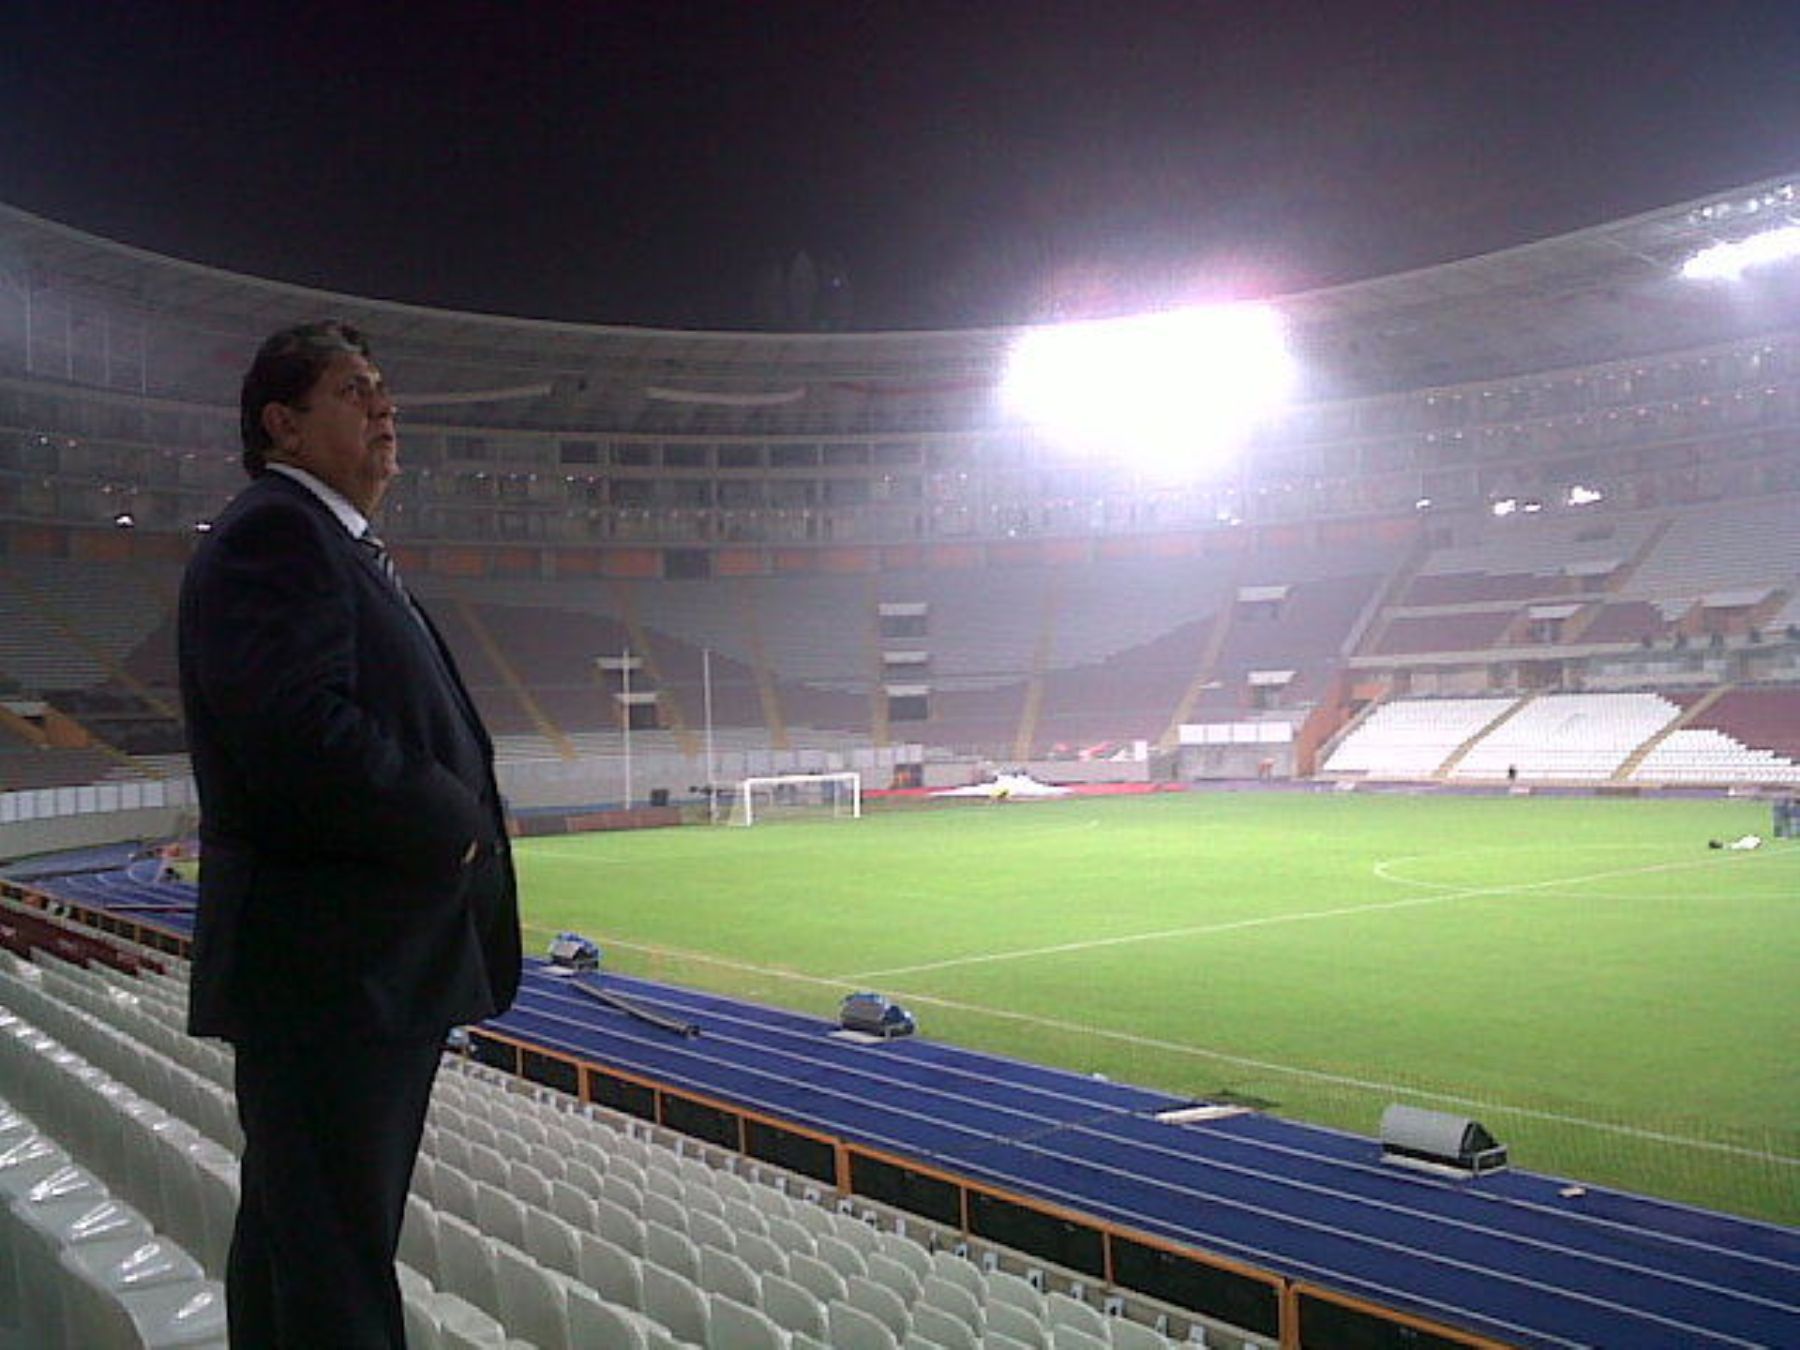 Presidente de la República realizó esta noche una visita de inspección al Estadio Nacional, que será inaugurado mañana.